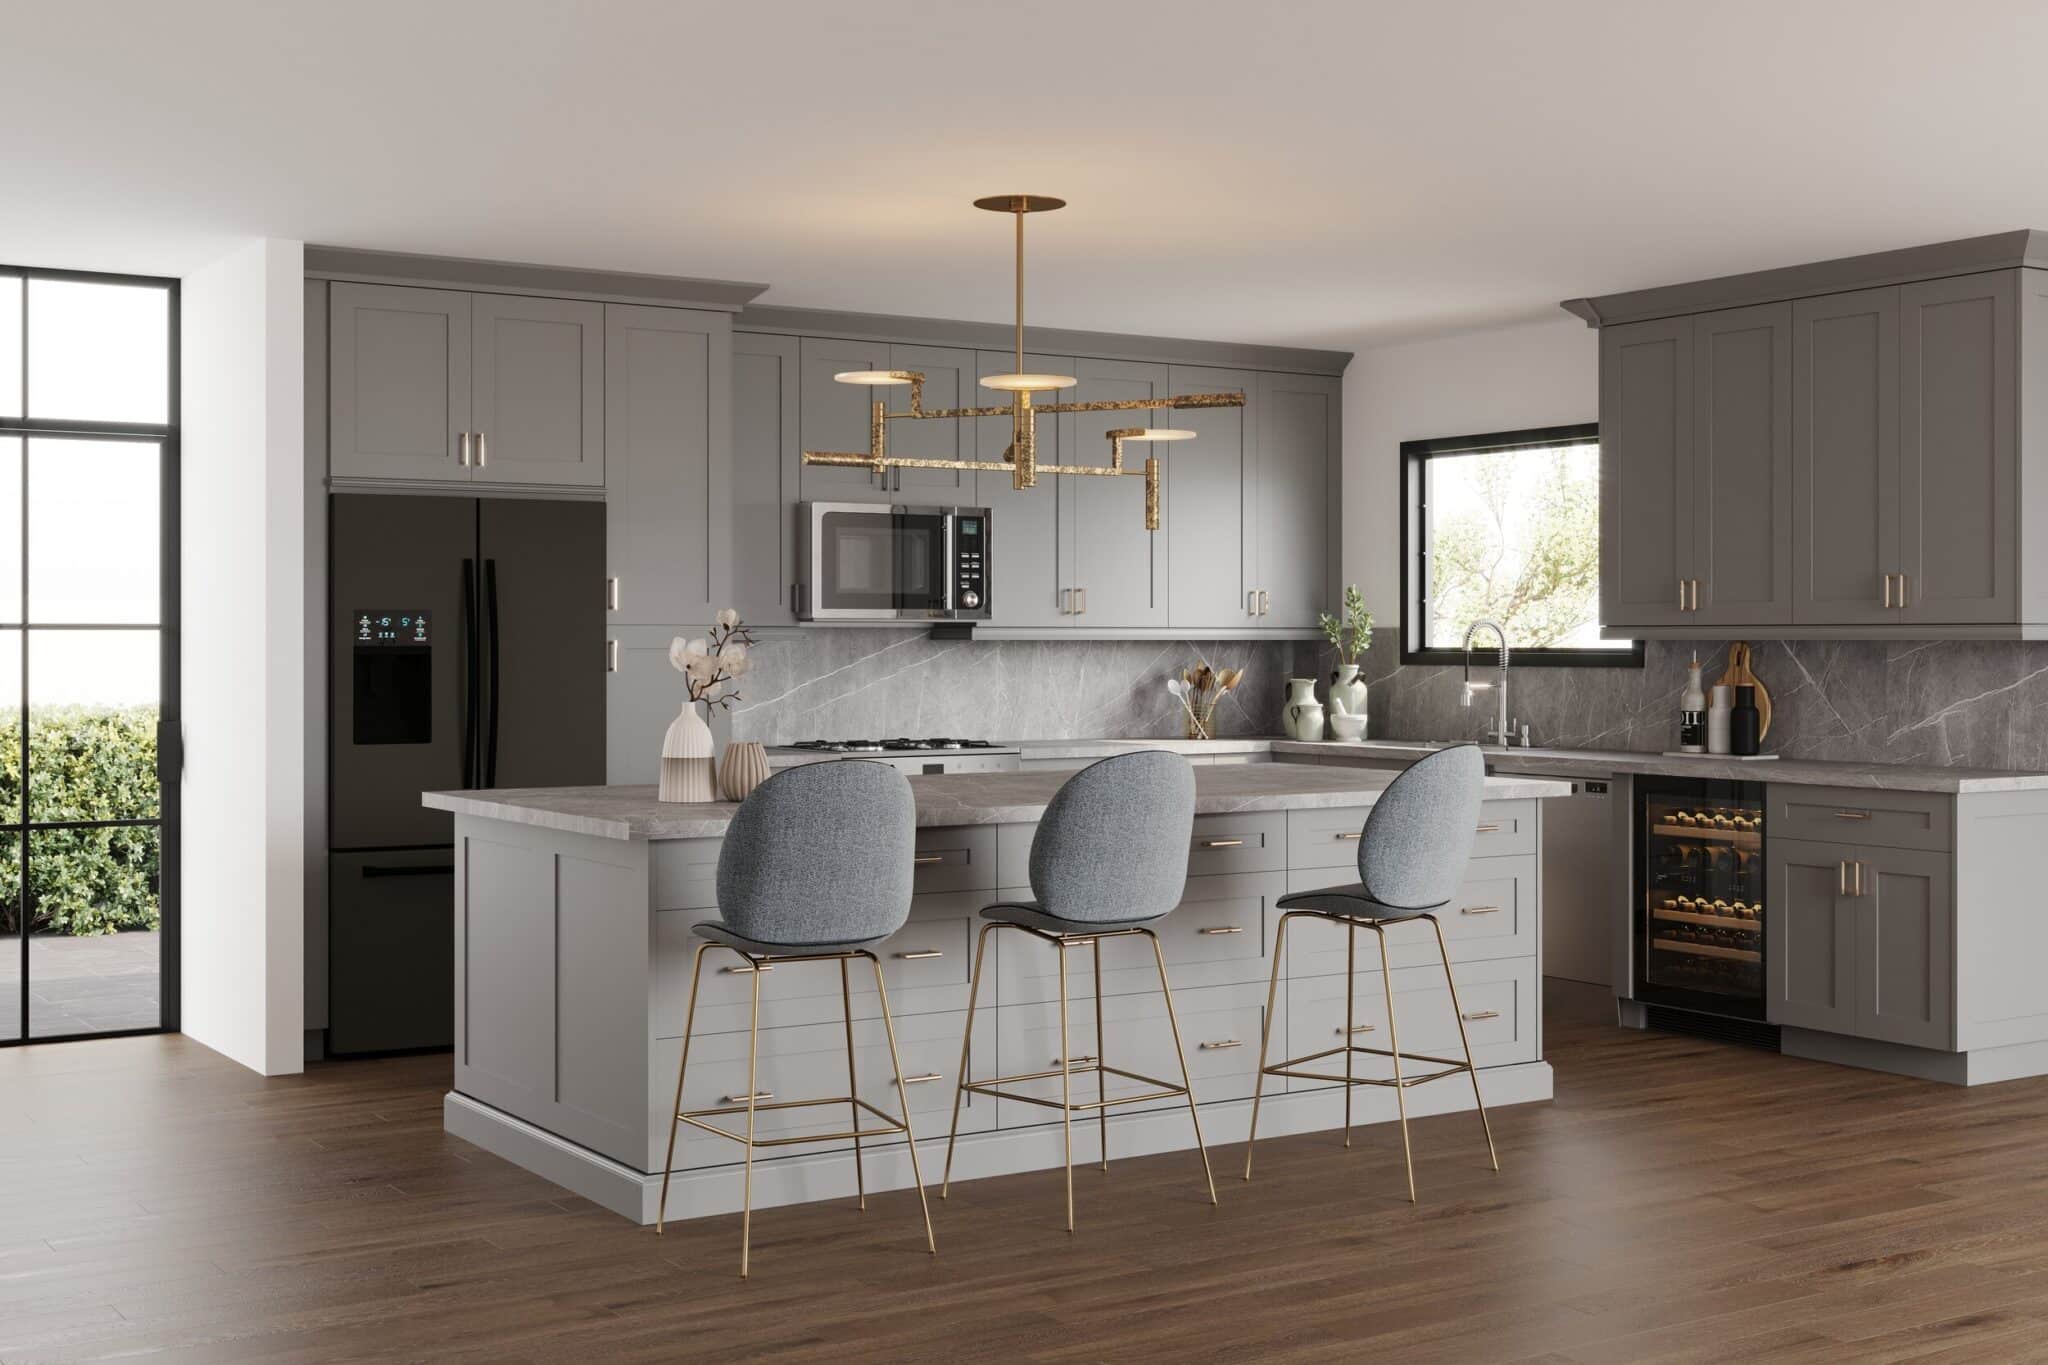 Adornus dark grey kitchen cabinets with light grey kitchen island